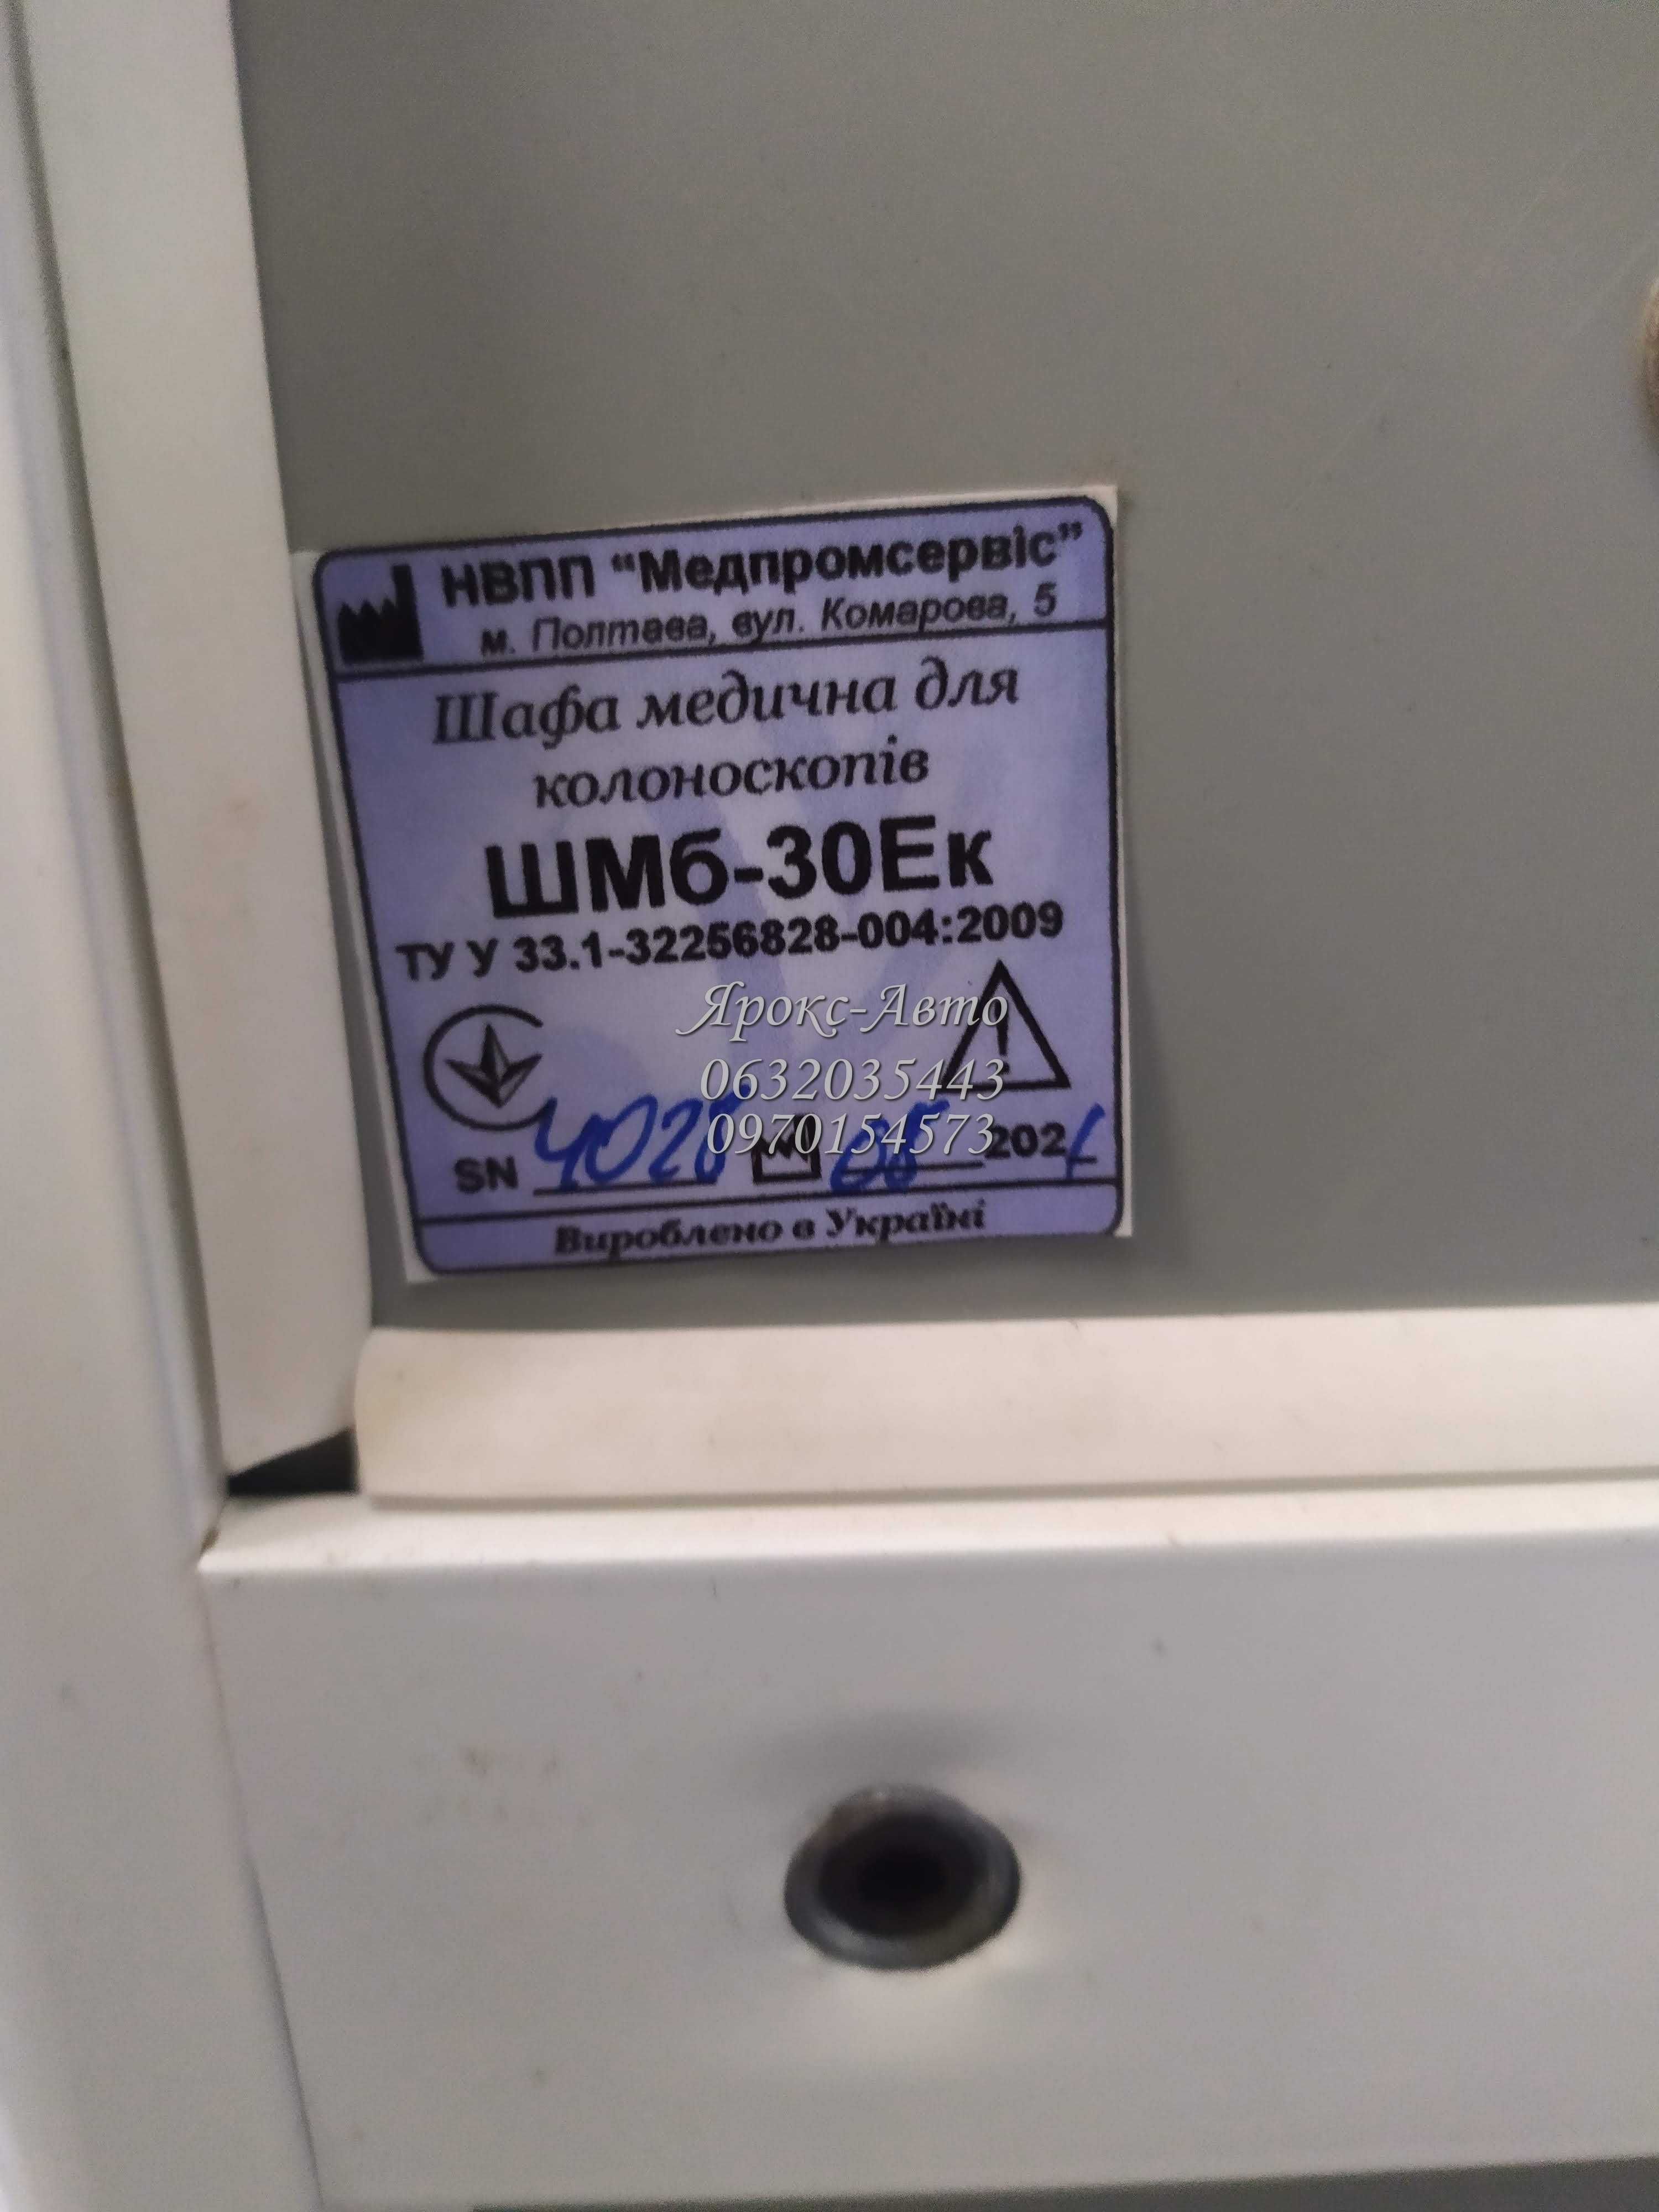 шкаф медецинский для колоноскопов ШМб-30Ек 000048984